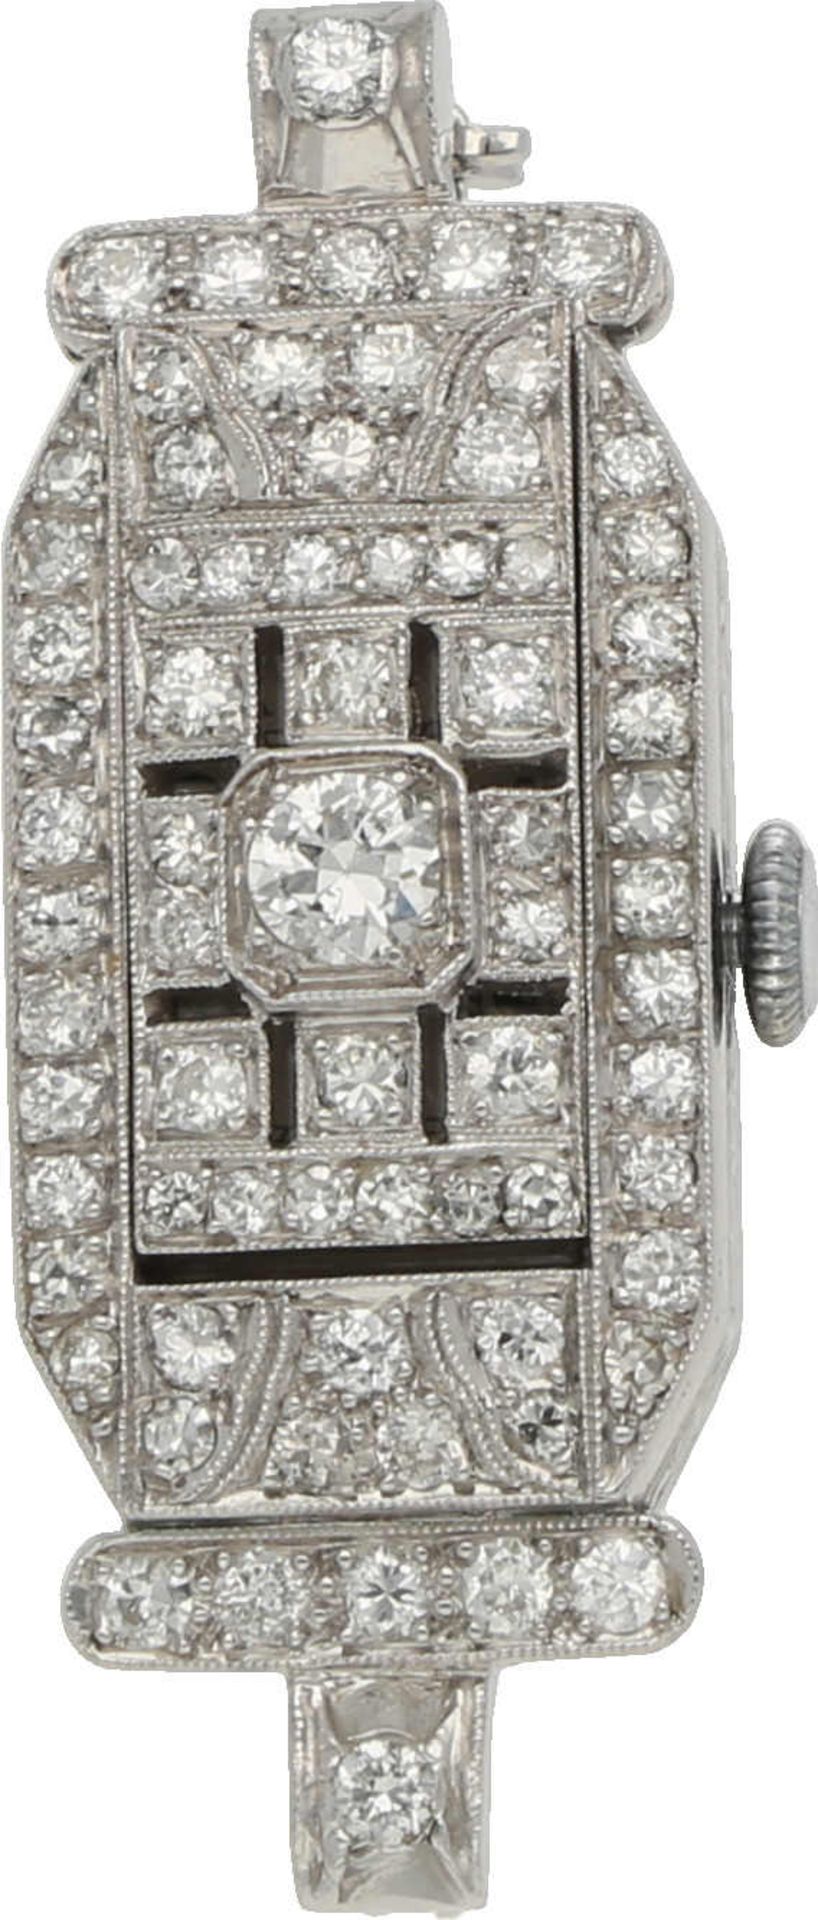 Diamant-Uhrenbrosche Stilvolle Uhrenbrosche in Platin 950 schauseitig verziert mit Diamanten von